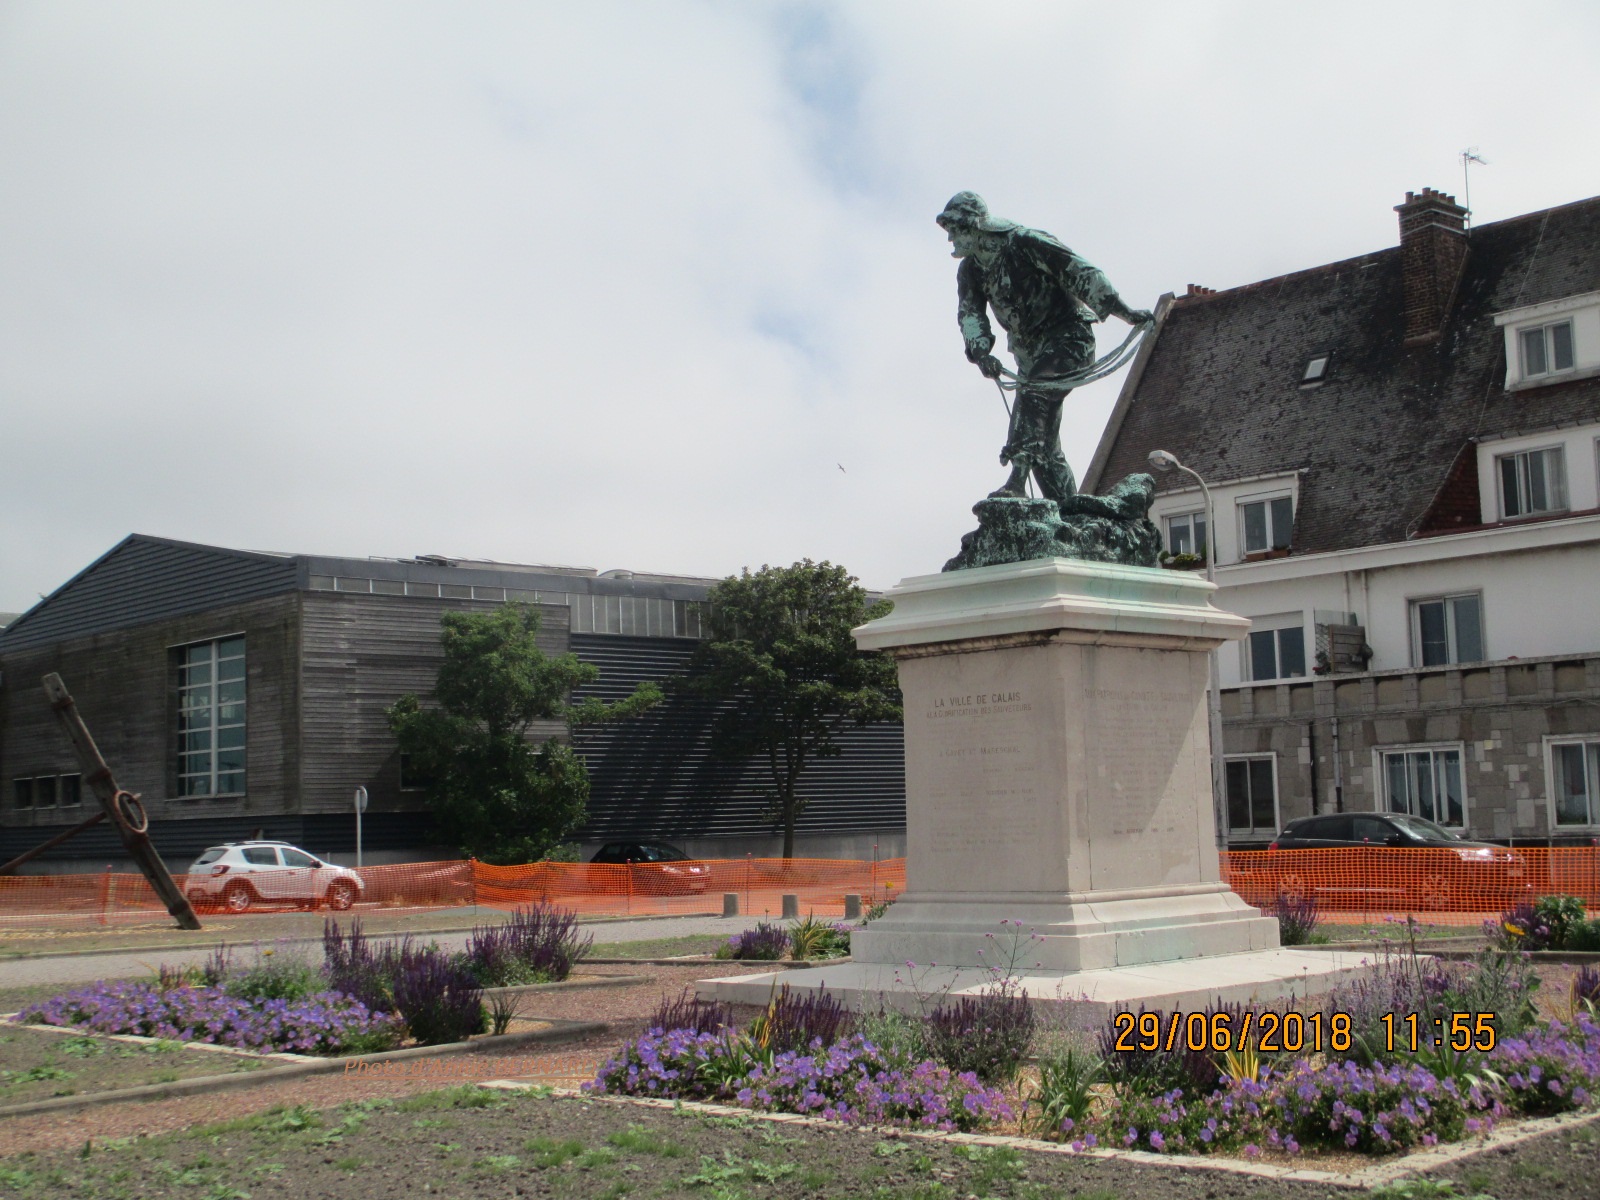 Mémoires du Courgain maritime de Calais avec le monument Gavet